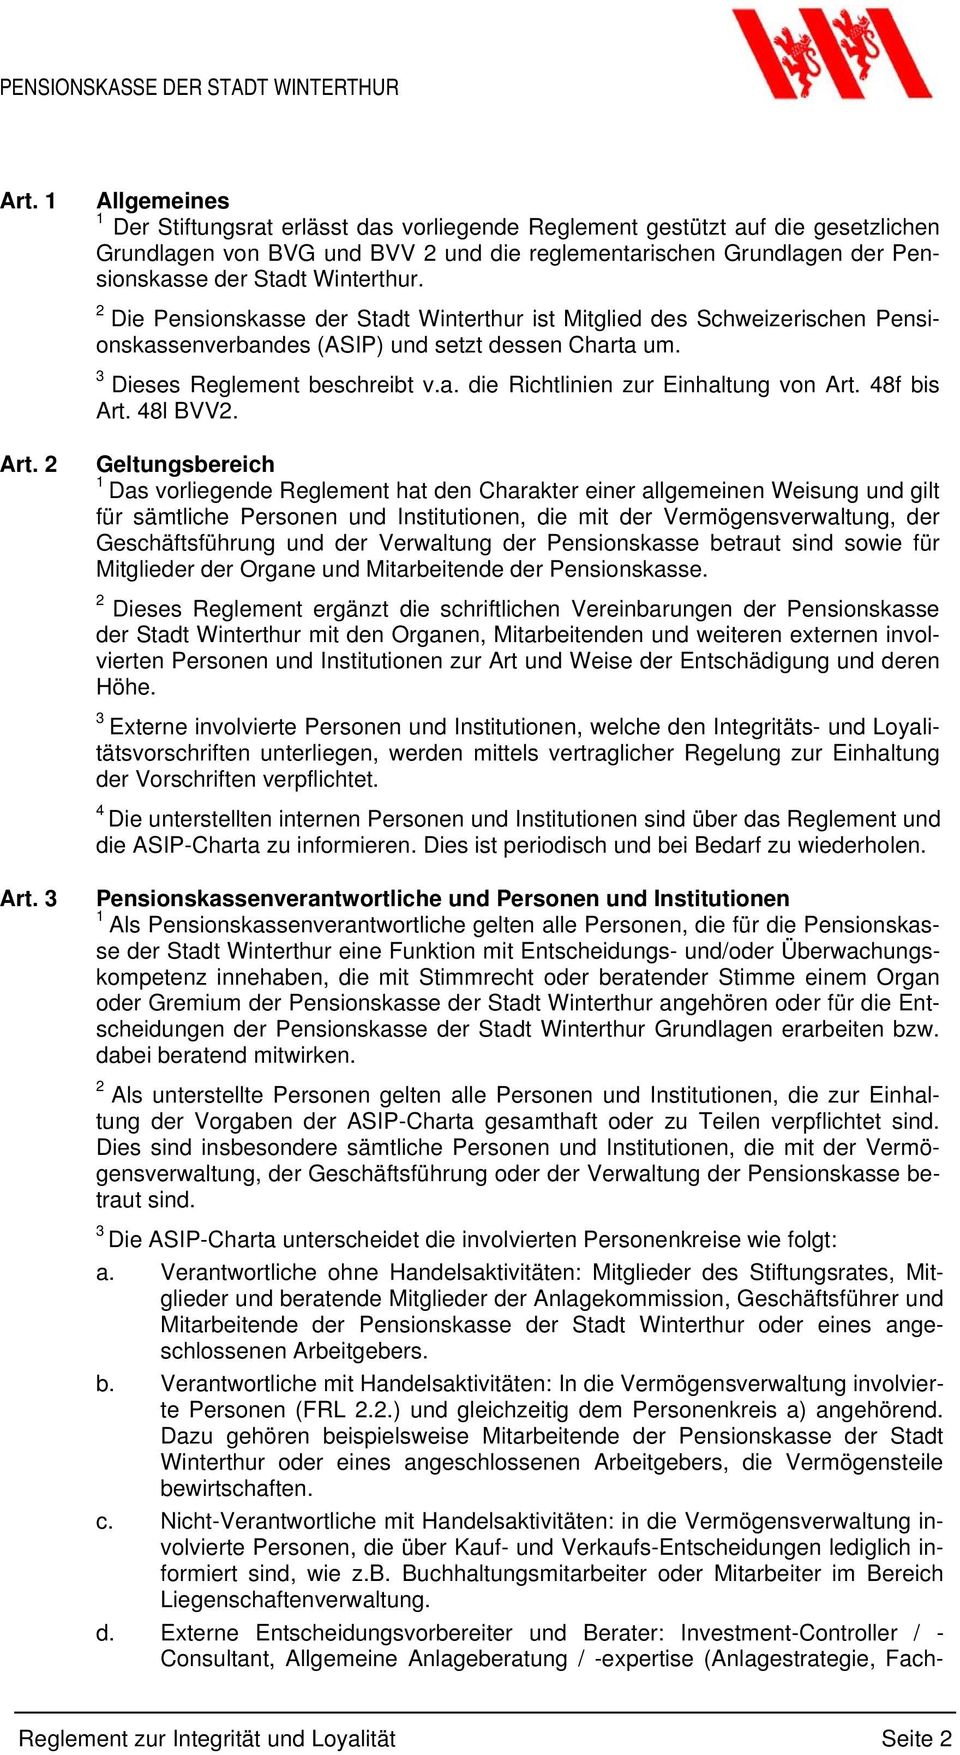 Winterthur. Die Pensionskasse der Stadt Winterthur ist Mitglied des Schweizerischen Pensionskassenverbandes (ASIP) und setzt dessen Charta um. 3 Dieses Reglement beschreibt v.a. die Richtlinien zur Einhaltung von Art.